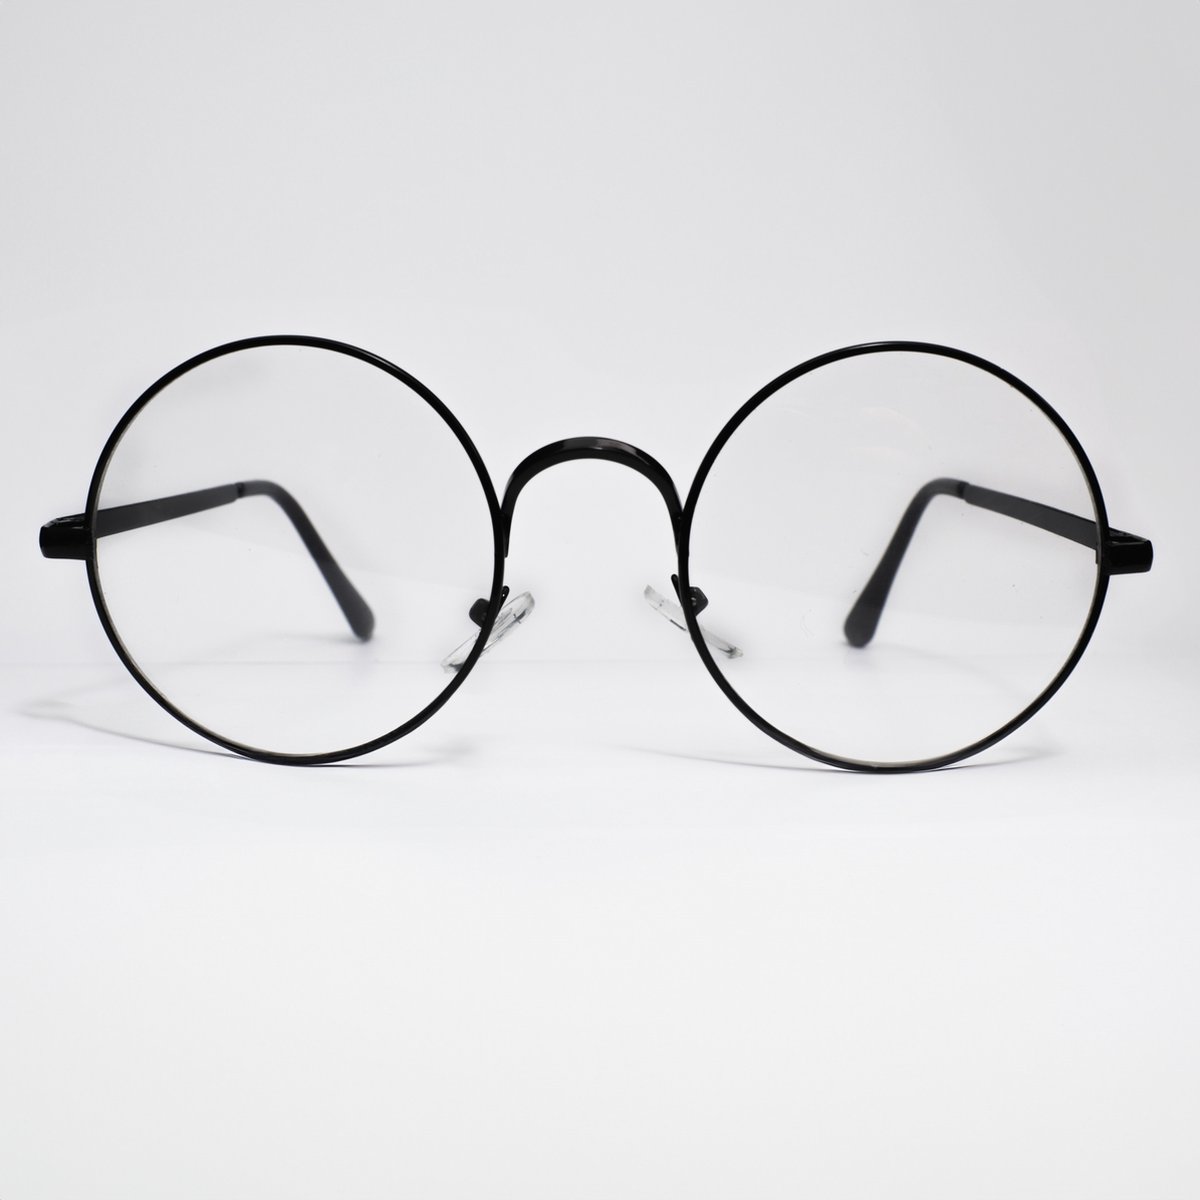 Computerbril - Blauw Licht Filter Bril - Beeldschermbril - Bril zonder Sterkte - Dames